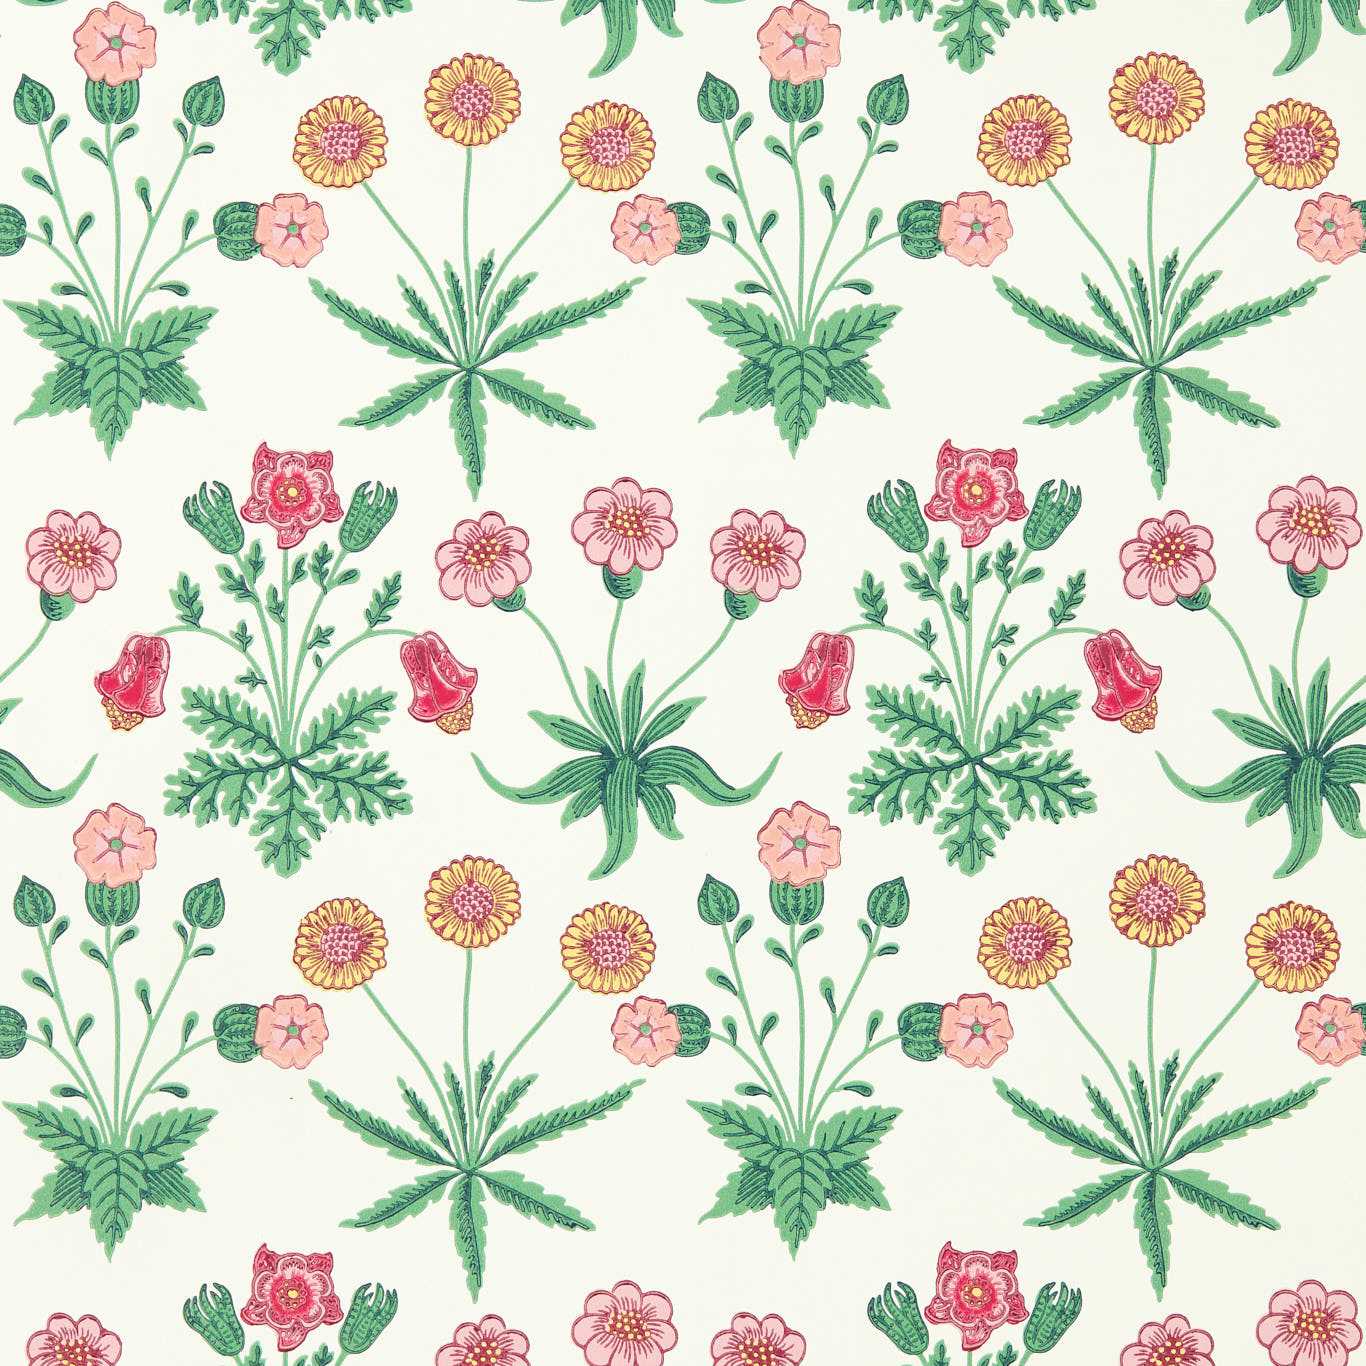 Daisy Strawberry Fields Wallpaper AARC510005 by Morris & Co